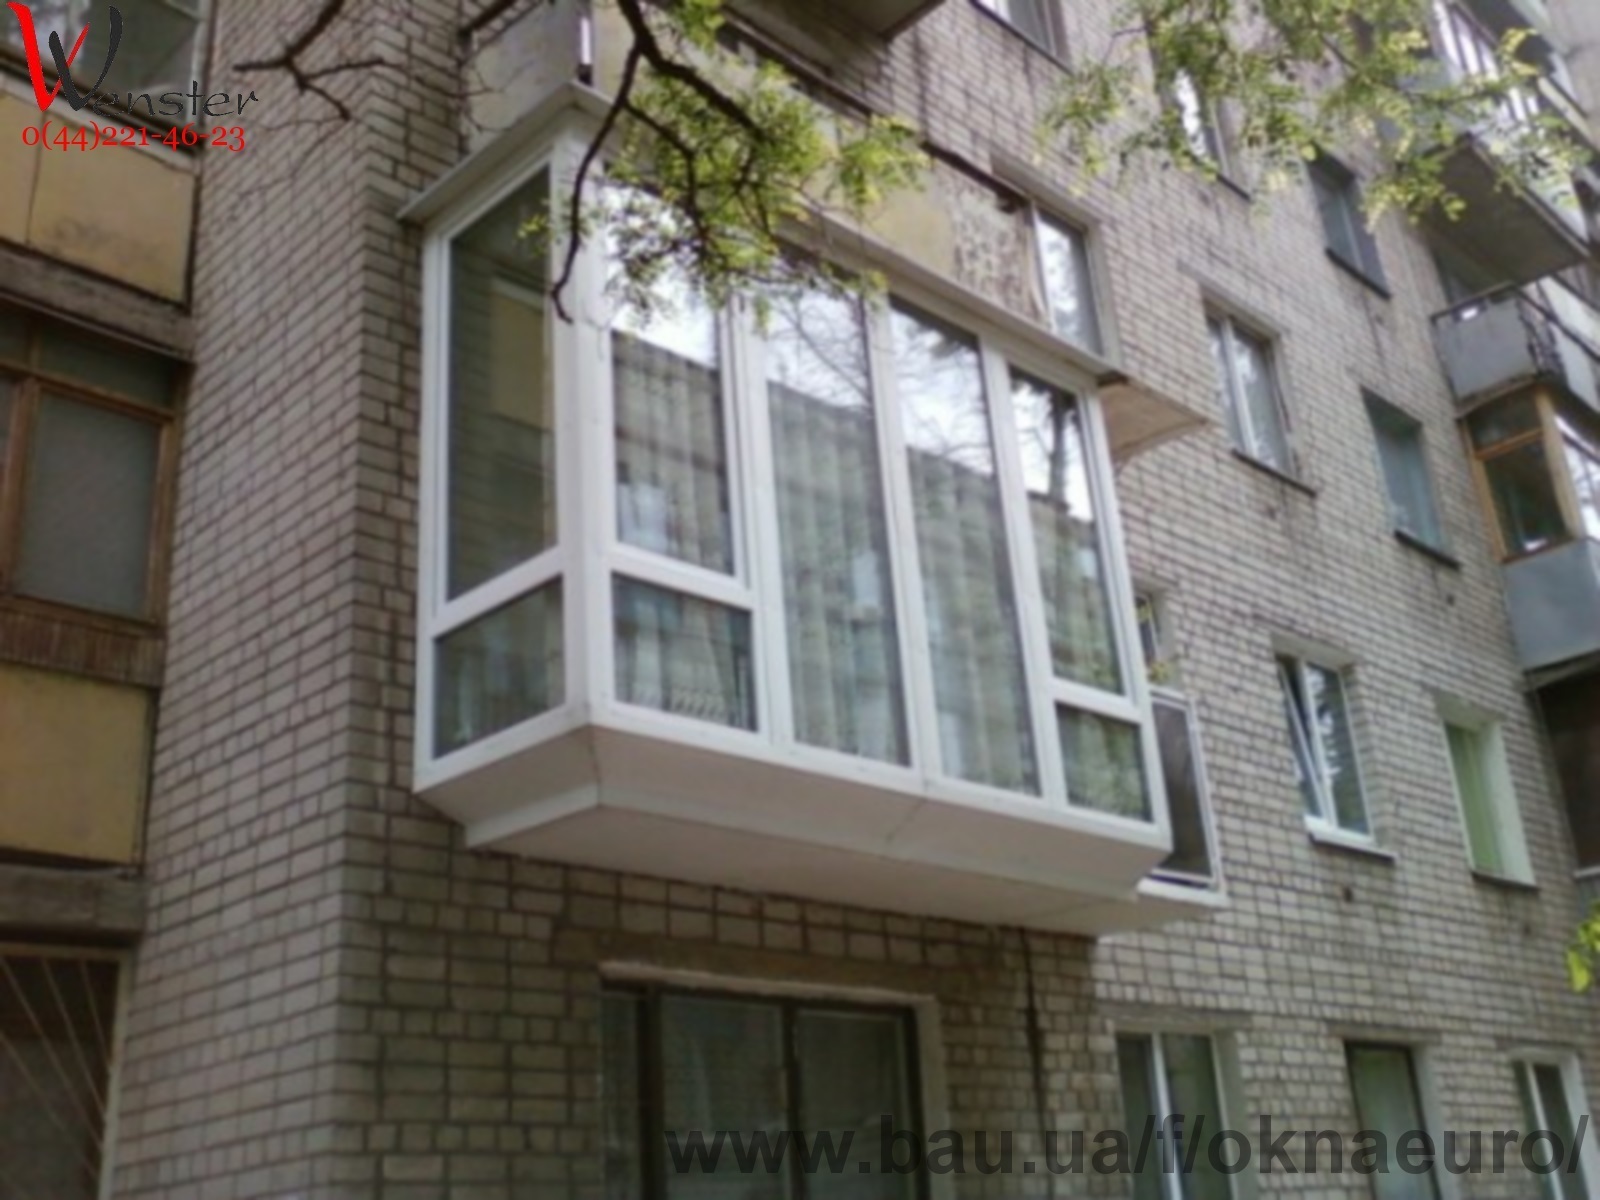 Вынос балкона - ремонт и строительство - отзывы о новостройках киева и области на форуме mr.domov.